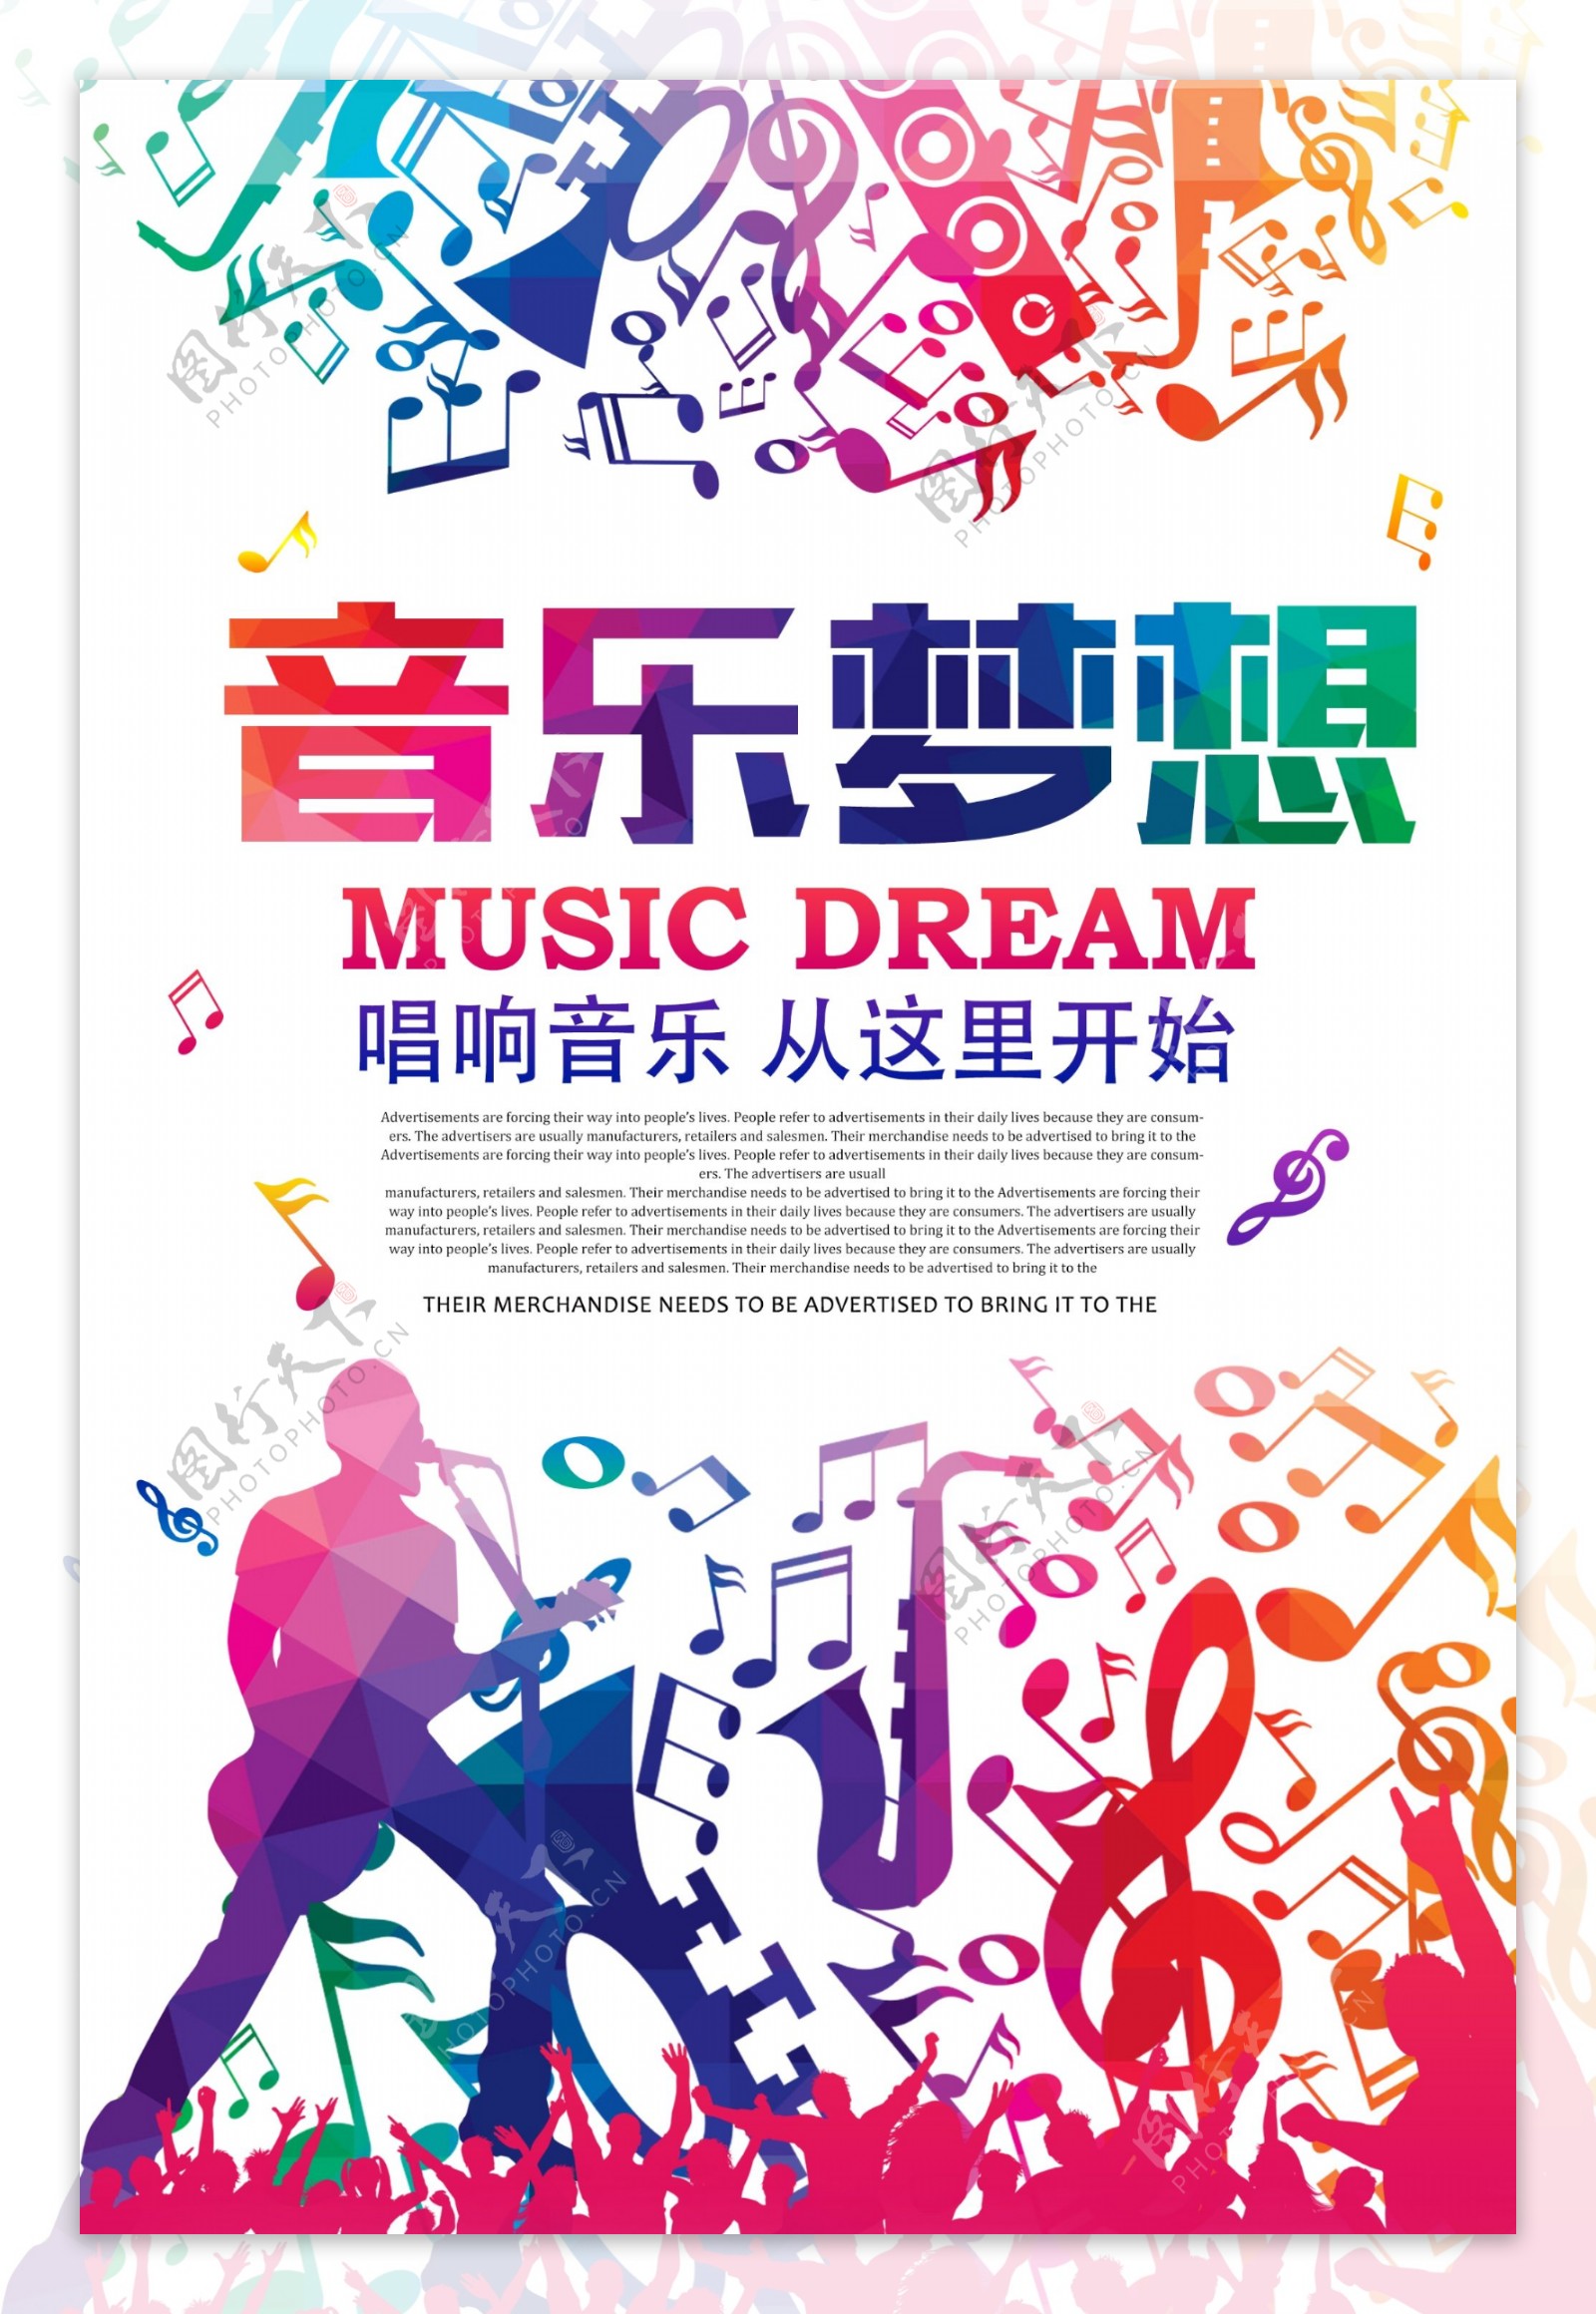 炫彩音乐梦想音乐海报设计素材